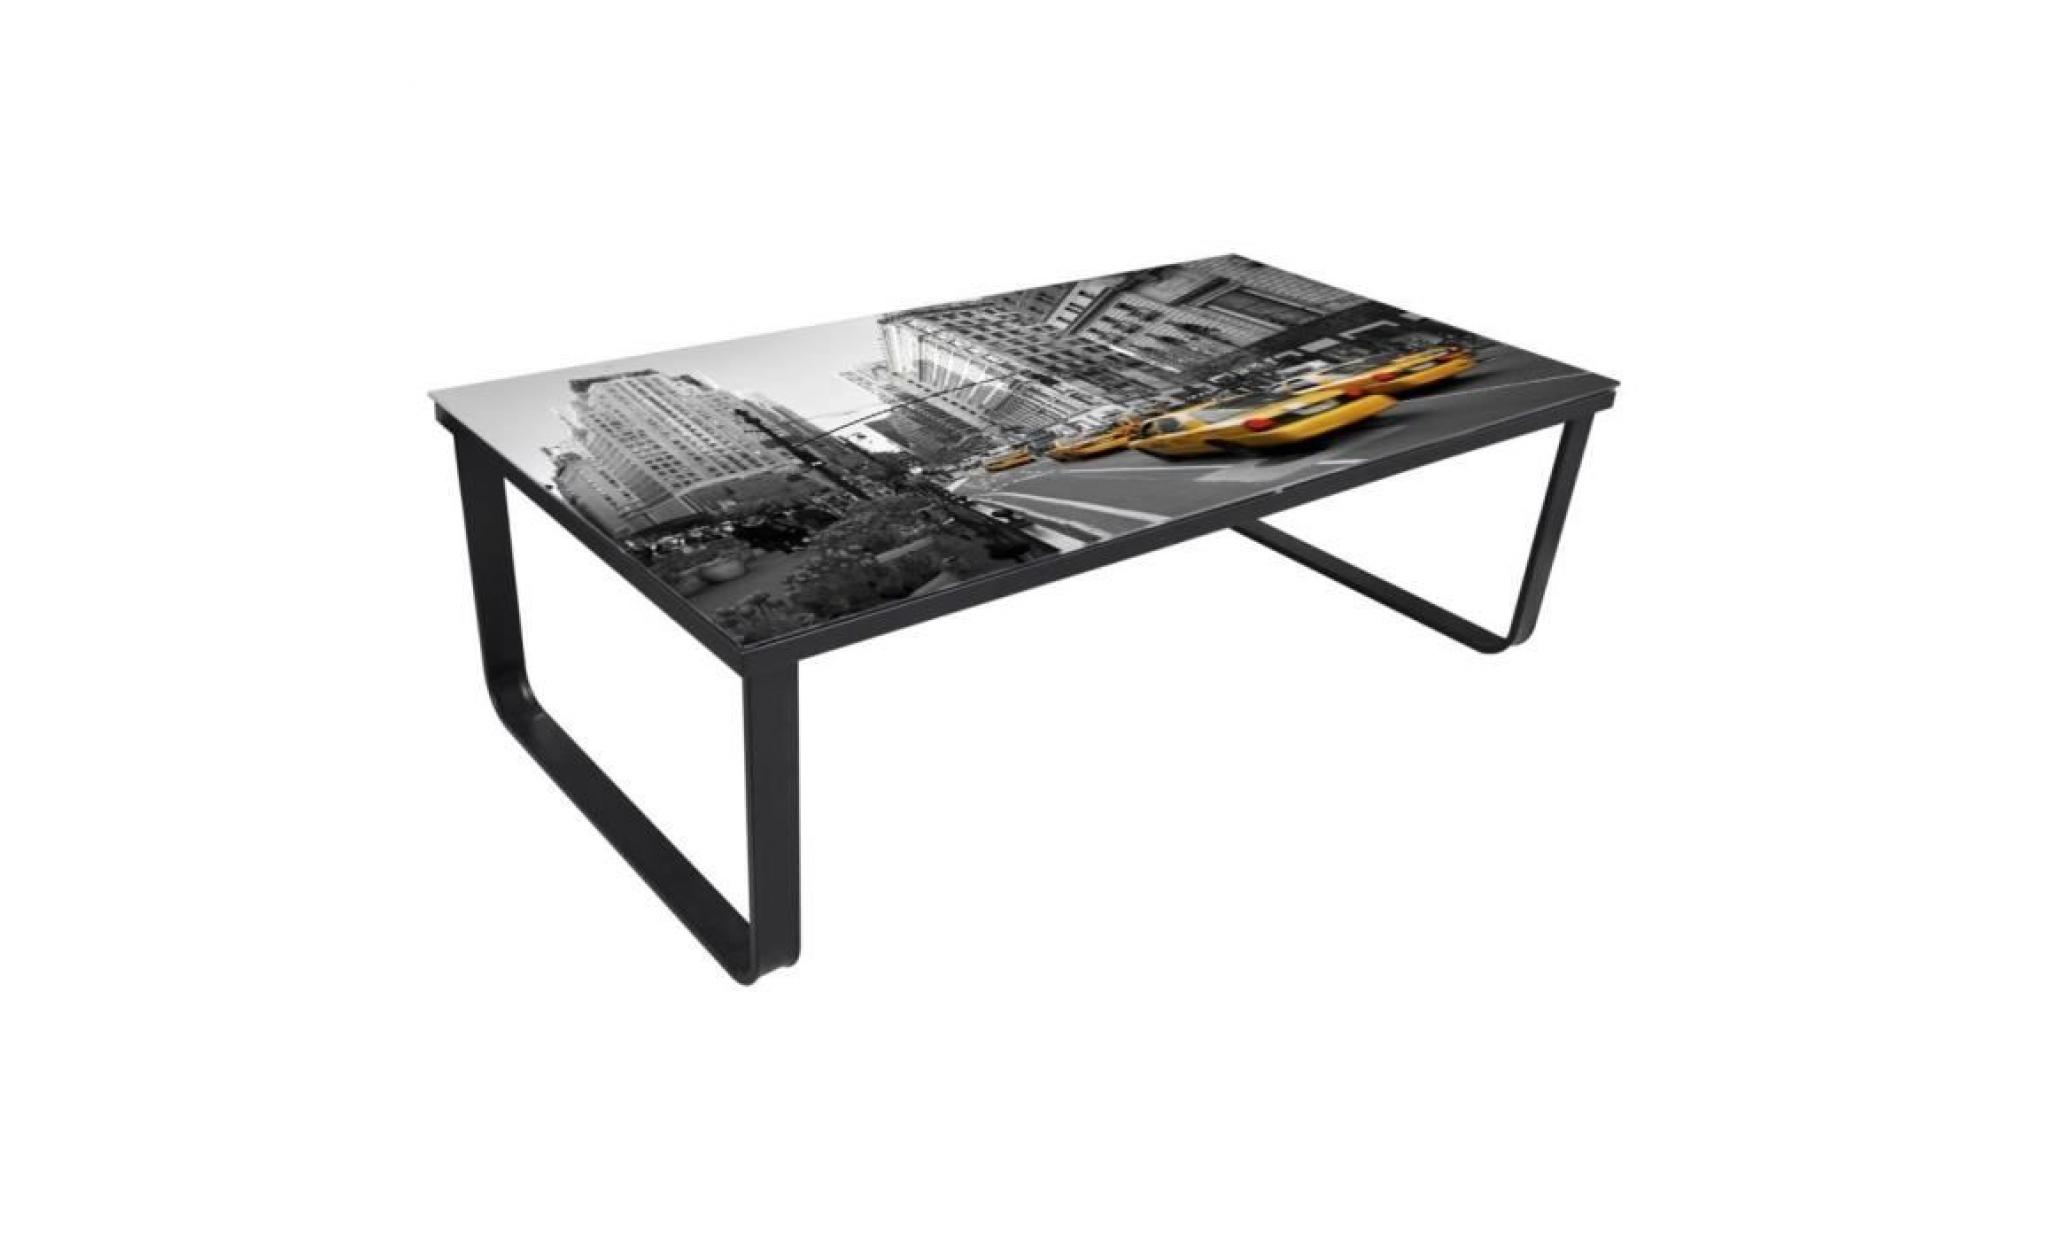 r56 la table basse en verre est multifonctionnelle. elle peut etre utilisee dans le salon ainsi que dans d'autres pieces